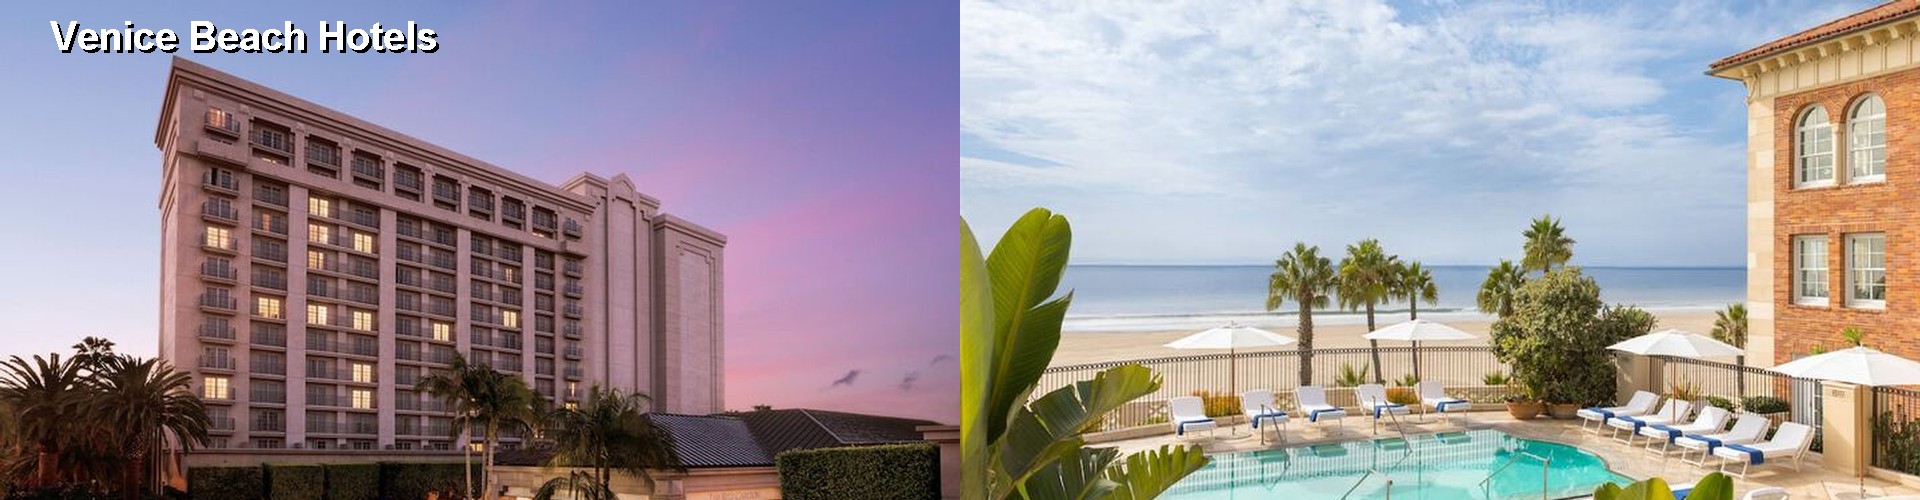 5 Best Hotels near Venice Beach